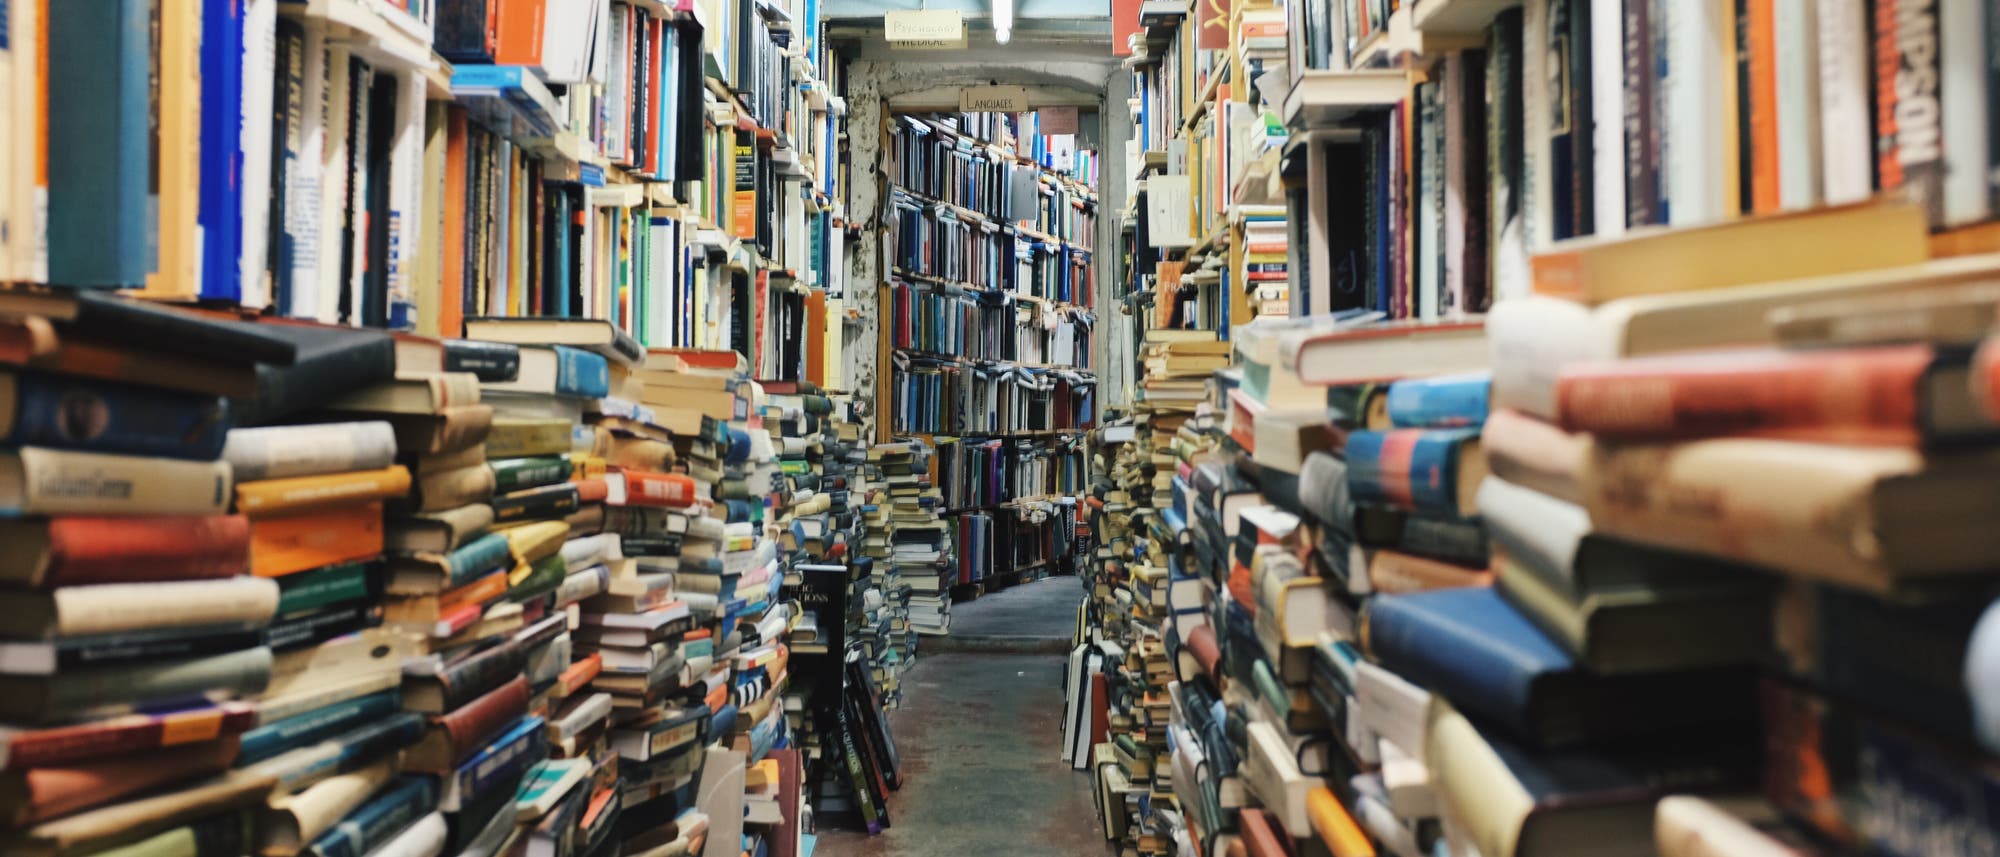 enger Gang zwischen gestapelten Büchern vor vollen Bücherregalen